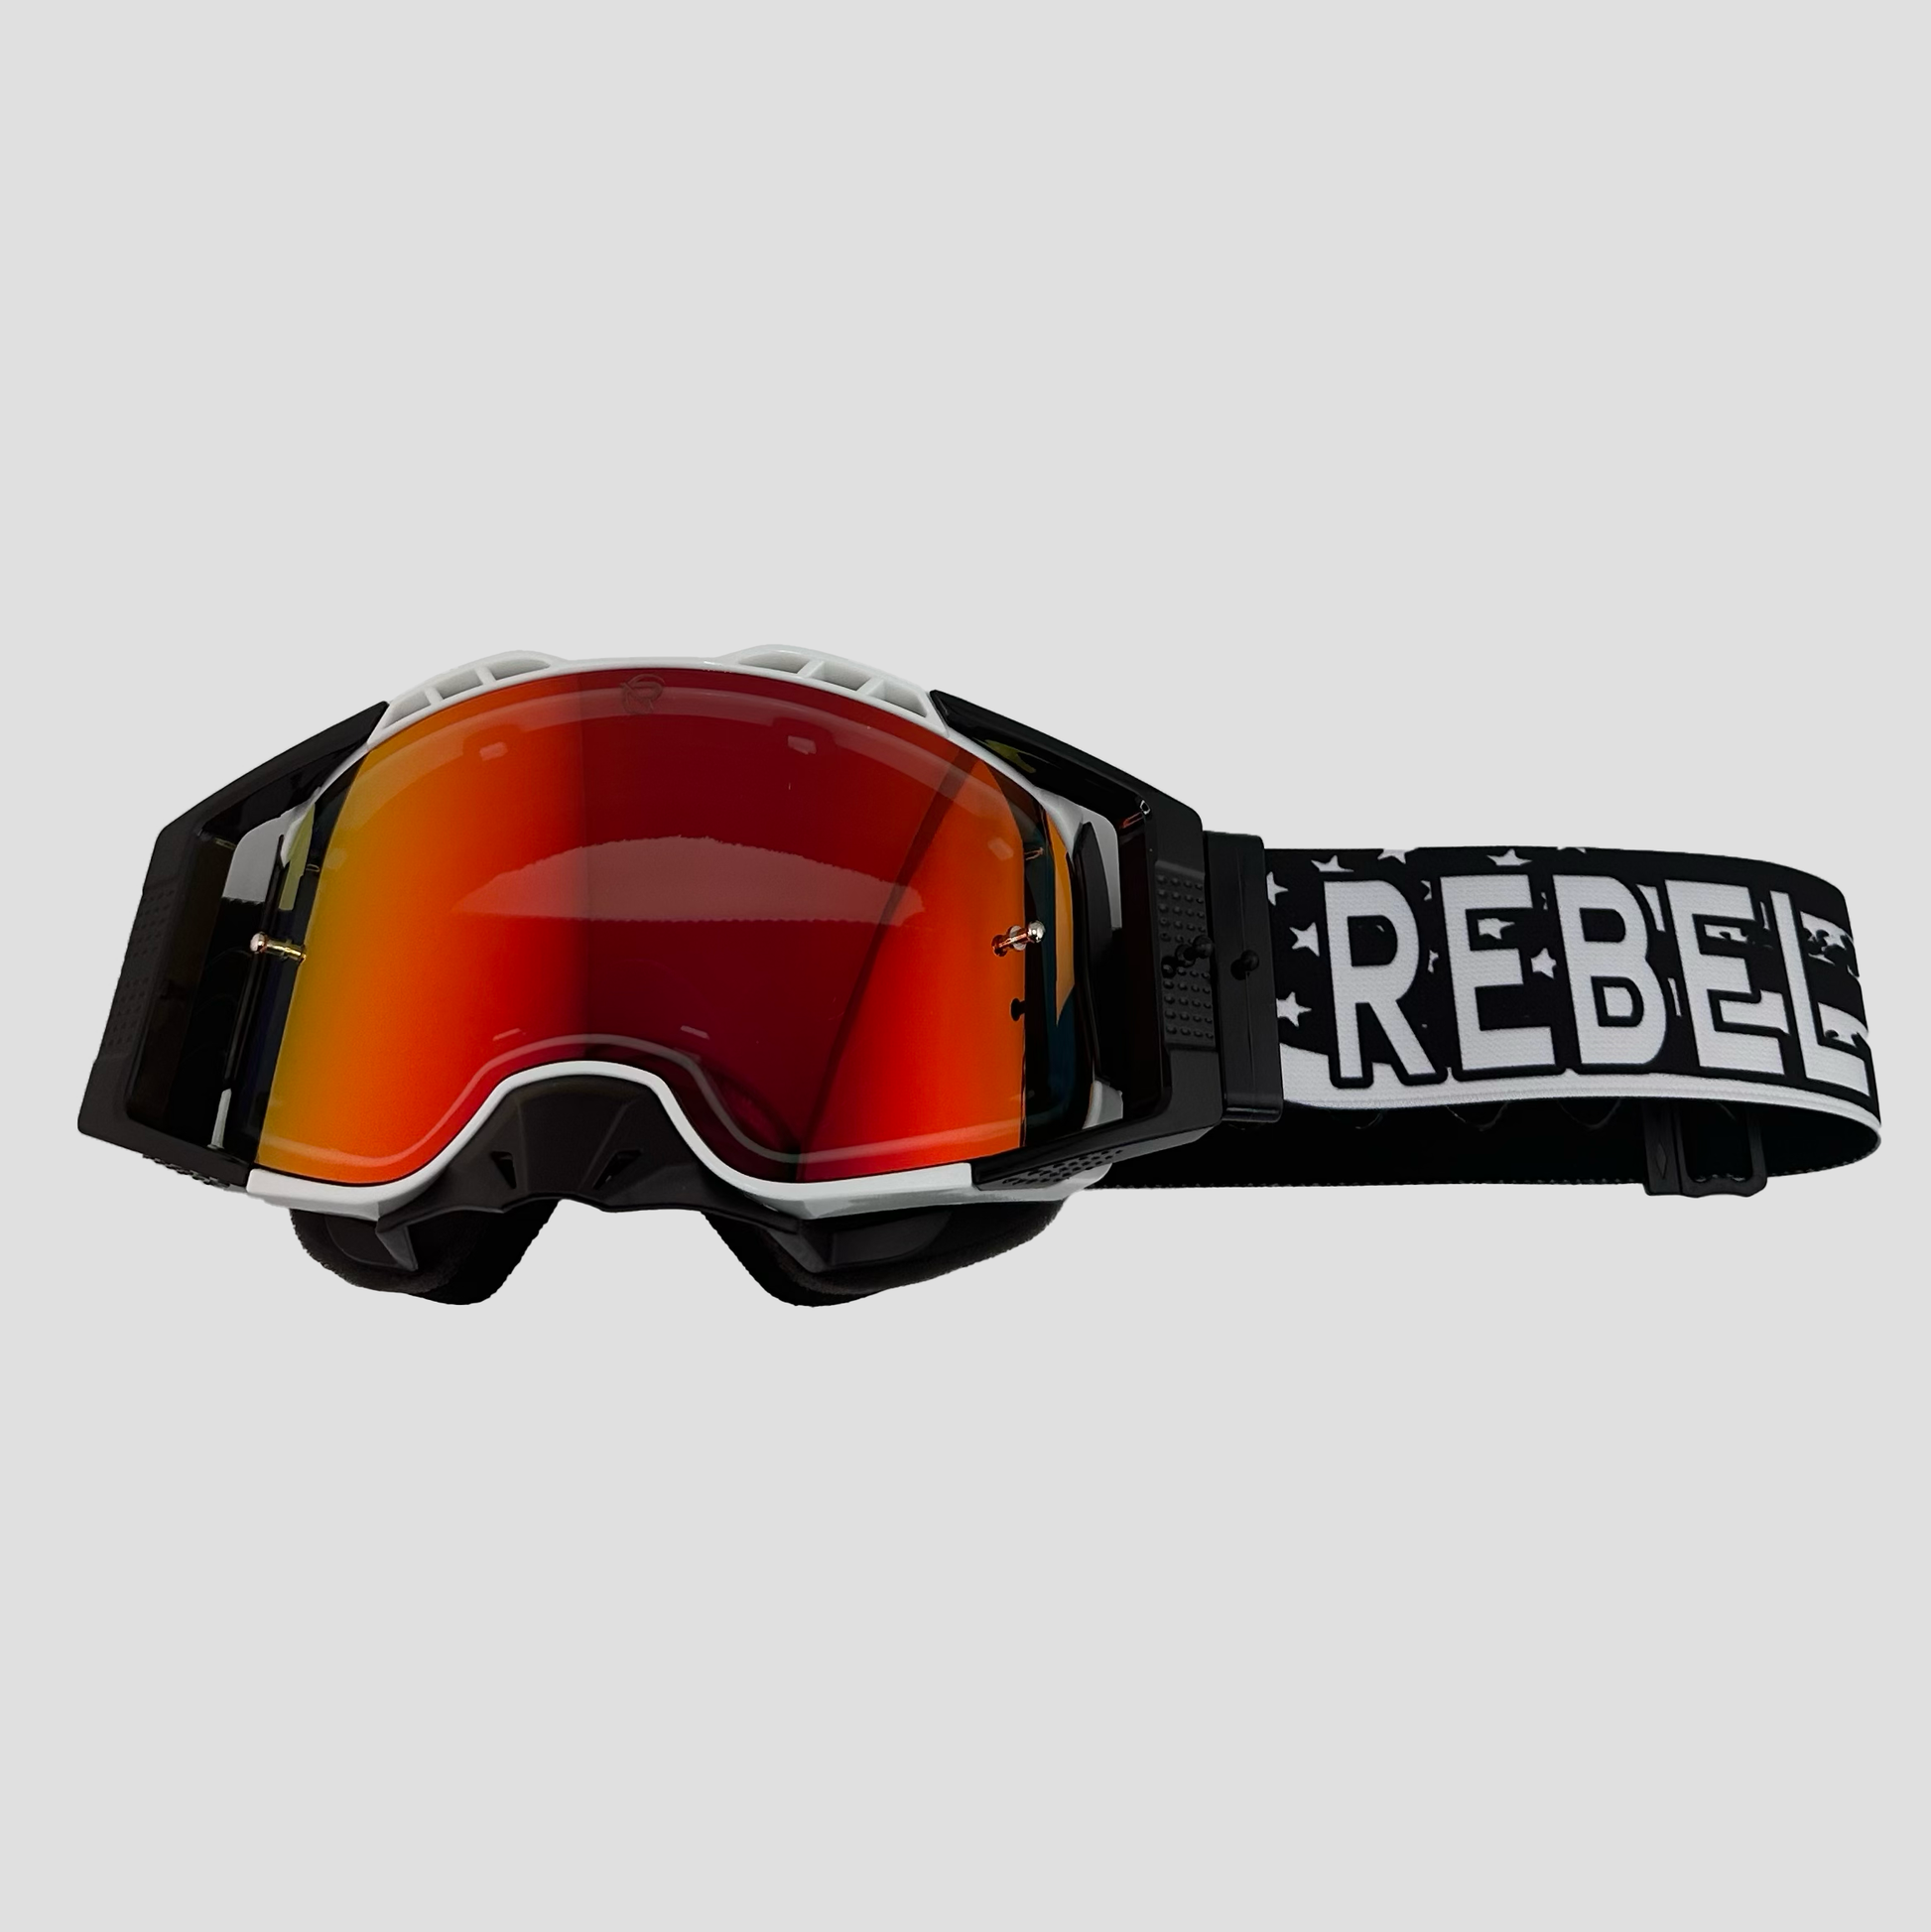 Defiant Pro Motocross Goggle - 2nd Amendment - Premium Motocross Goggle from Rebel Optics - Just $84.99! Shop now at Rebel Optics